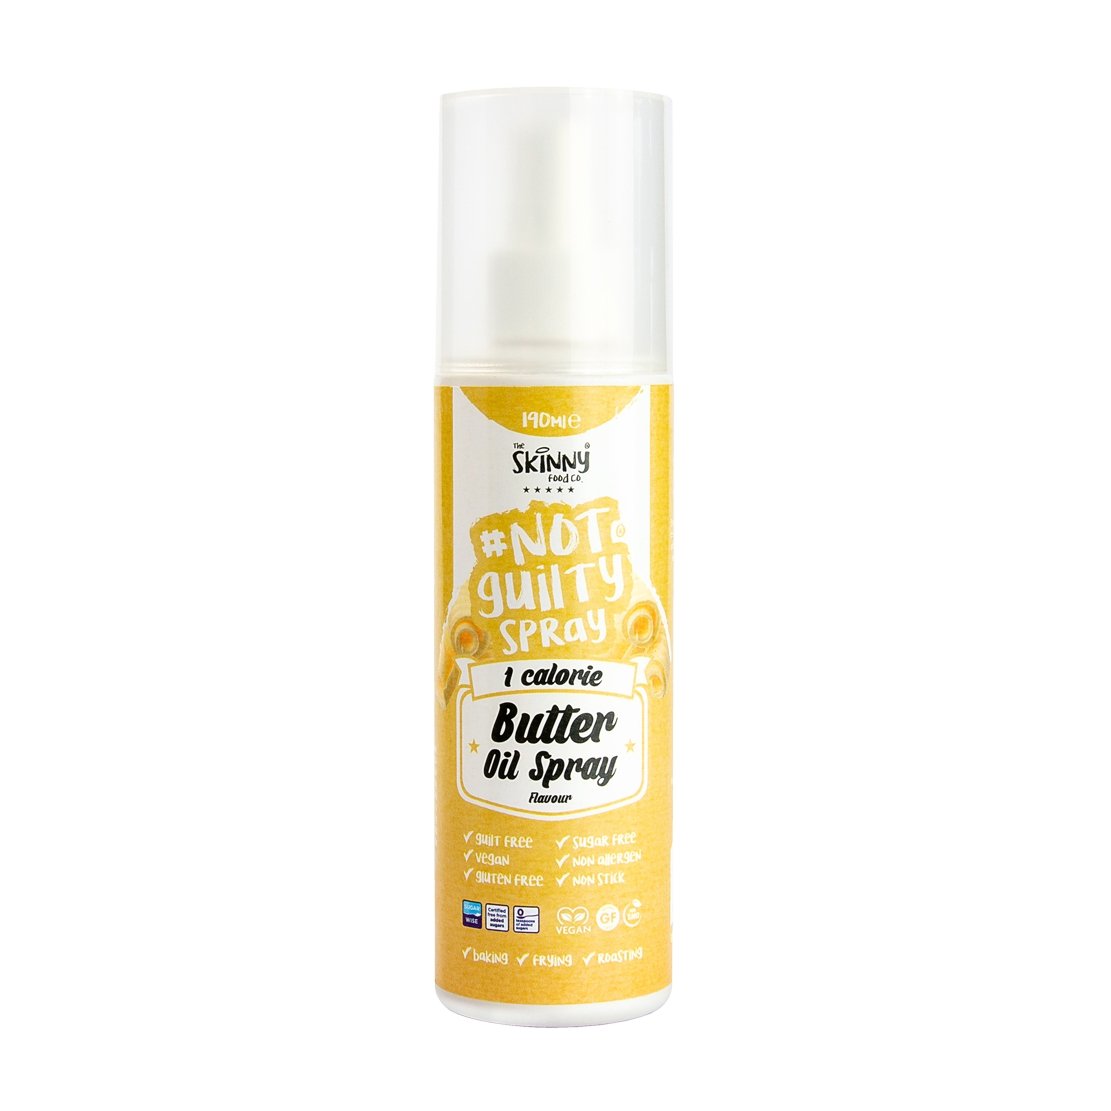 Spray On Butter - 1 Cal Skinny Spray - 190ml - theskinnyfoodco